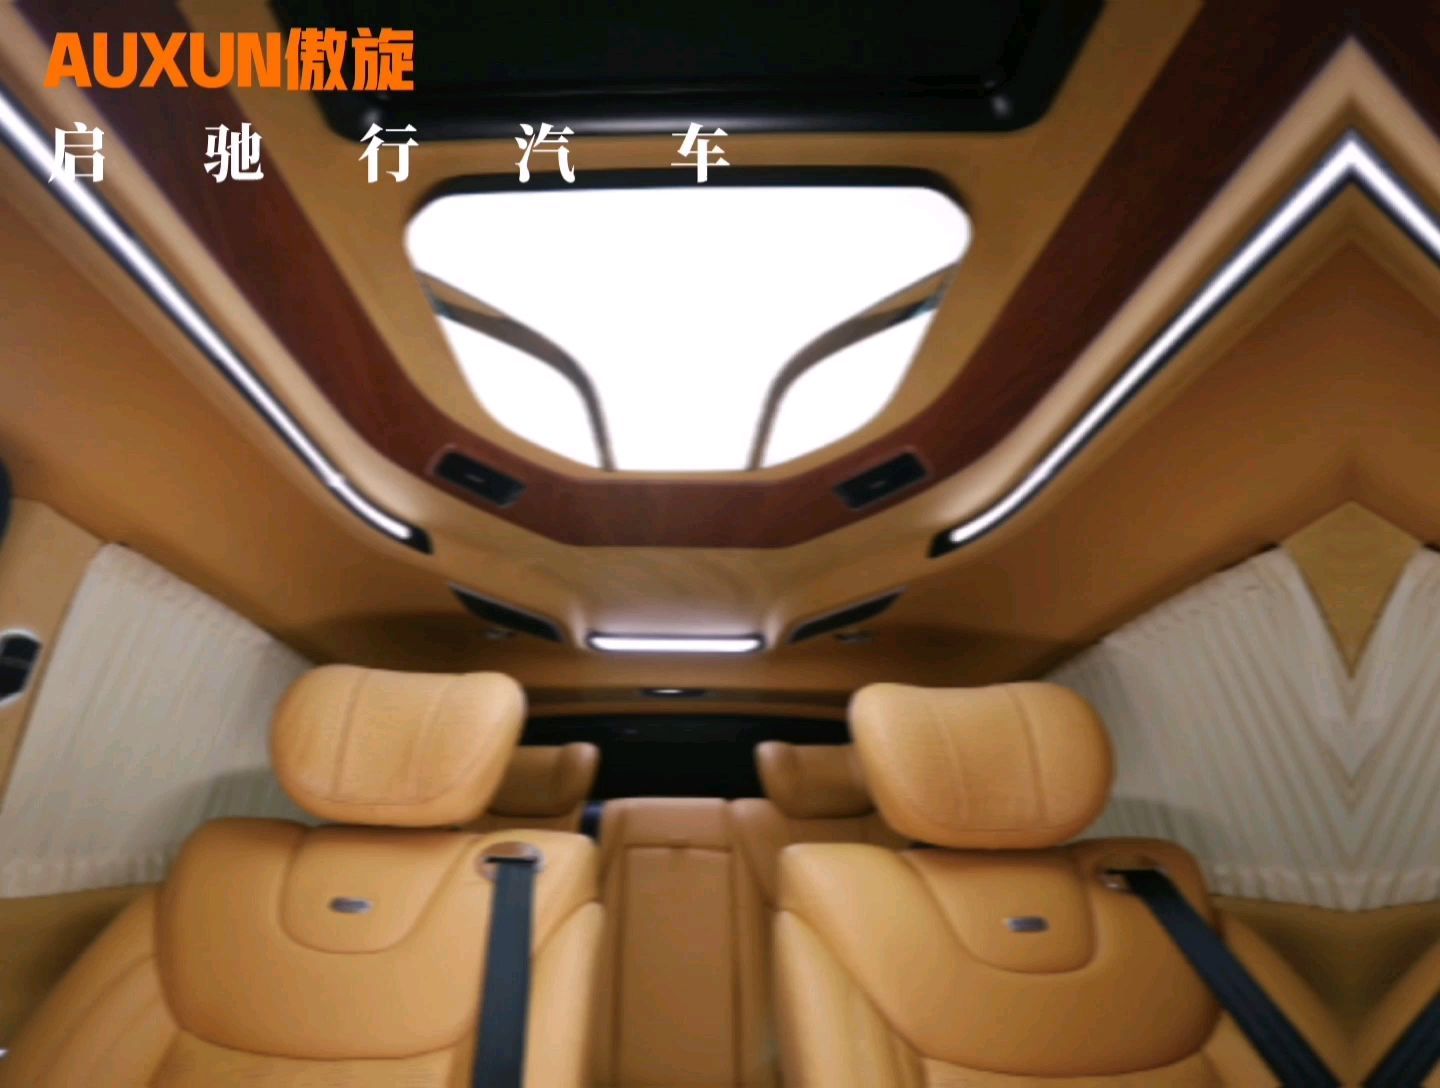 傲旋为打造更适合中国人的汽车，AUXUN傲旋独立高端商务车品牌，奔驰官方合作伙伴，持续服务中国用户。